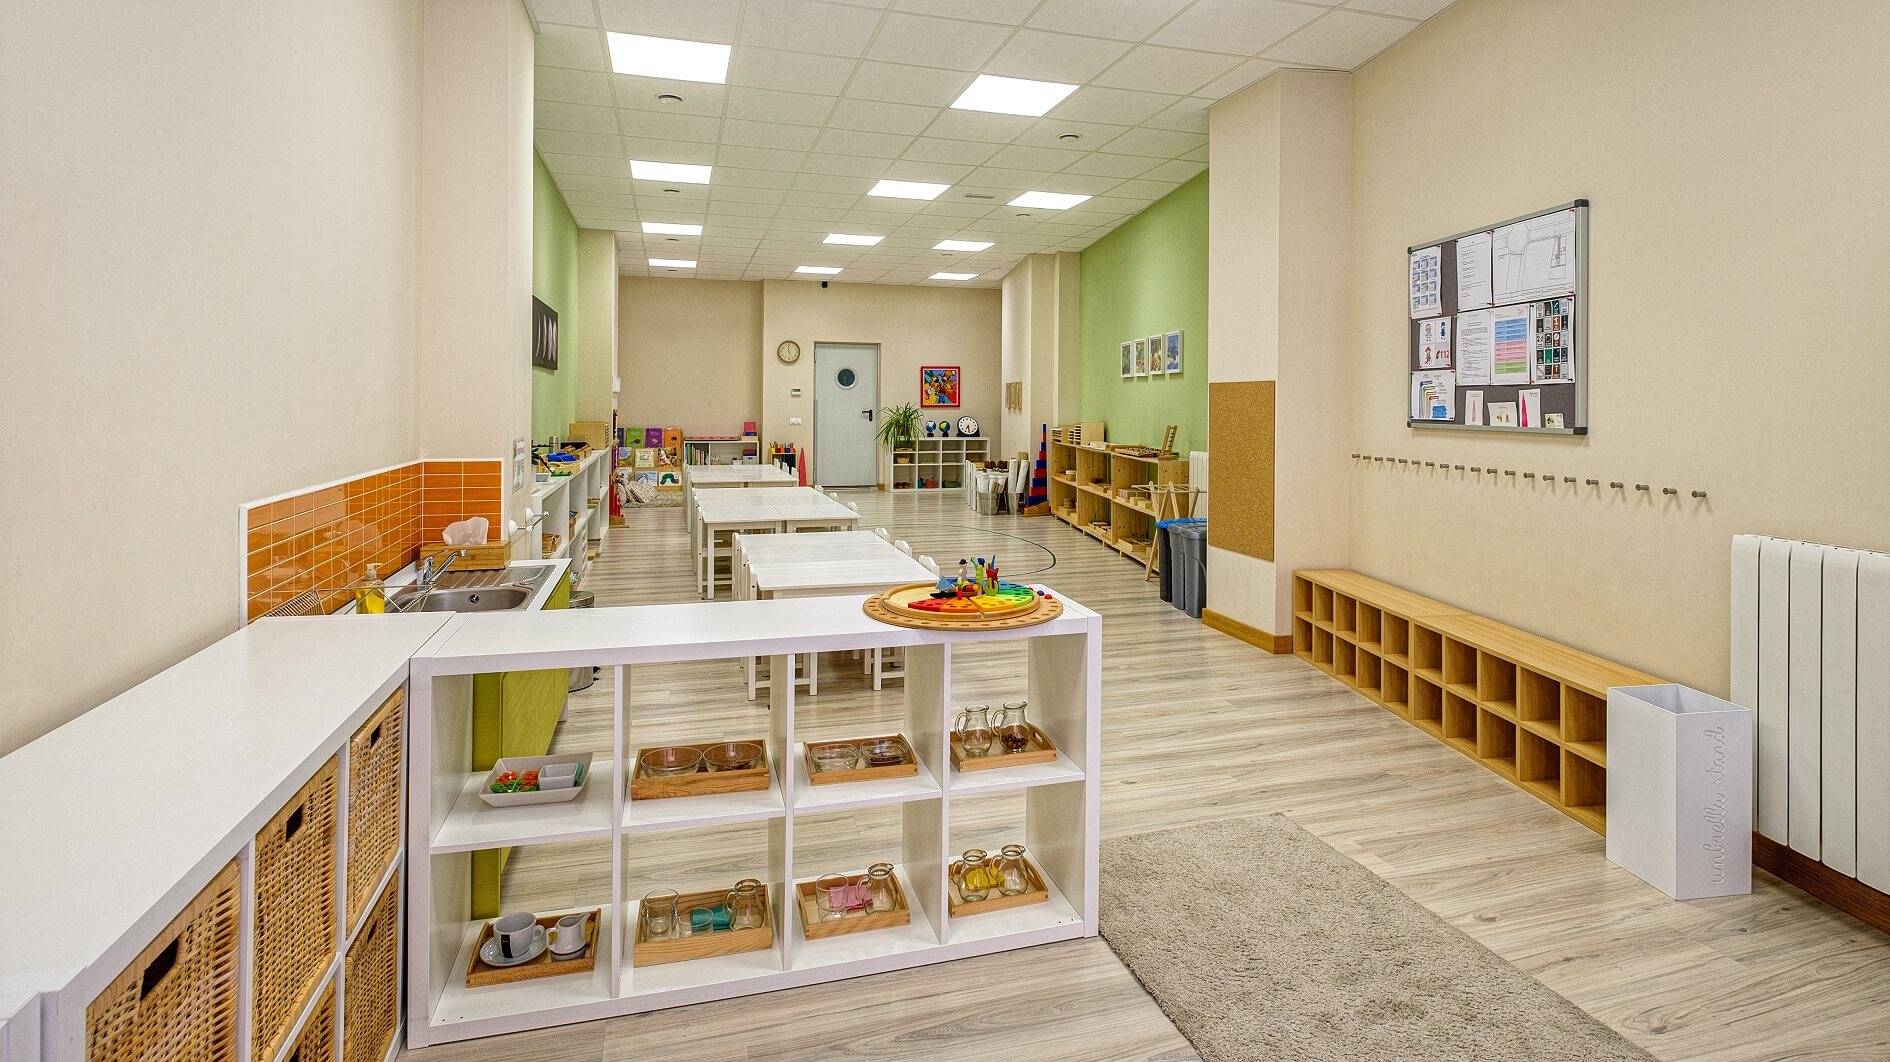 Aula Casa de niños (3 a 6 años) de Cuarto Creciente Montessori School